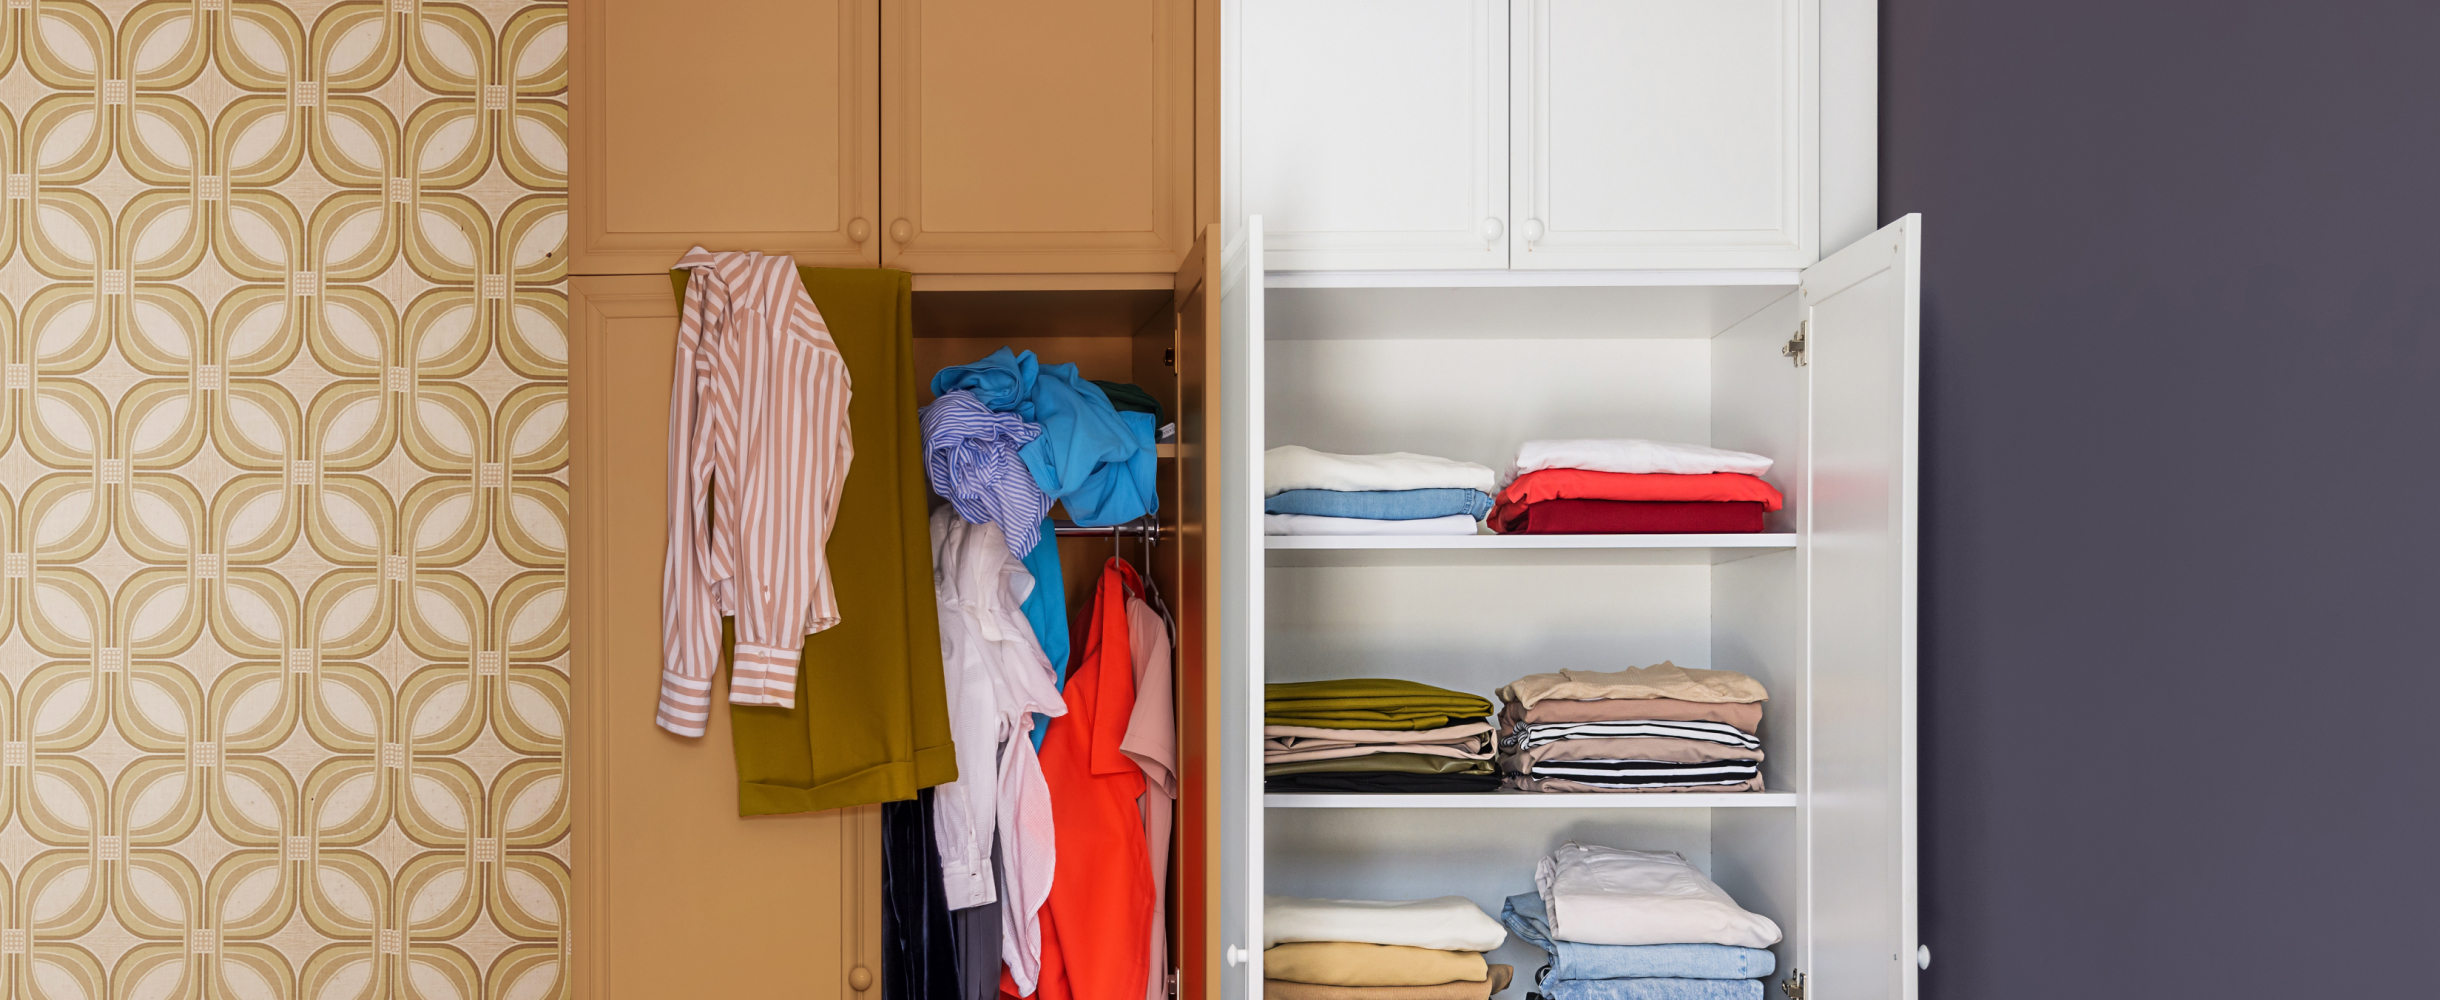 Сохранение формы и порядка в гардеробе